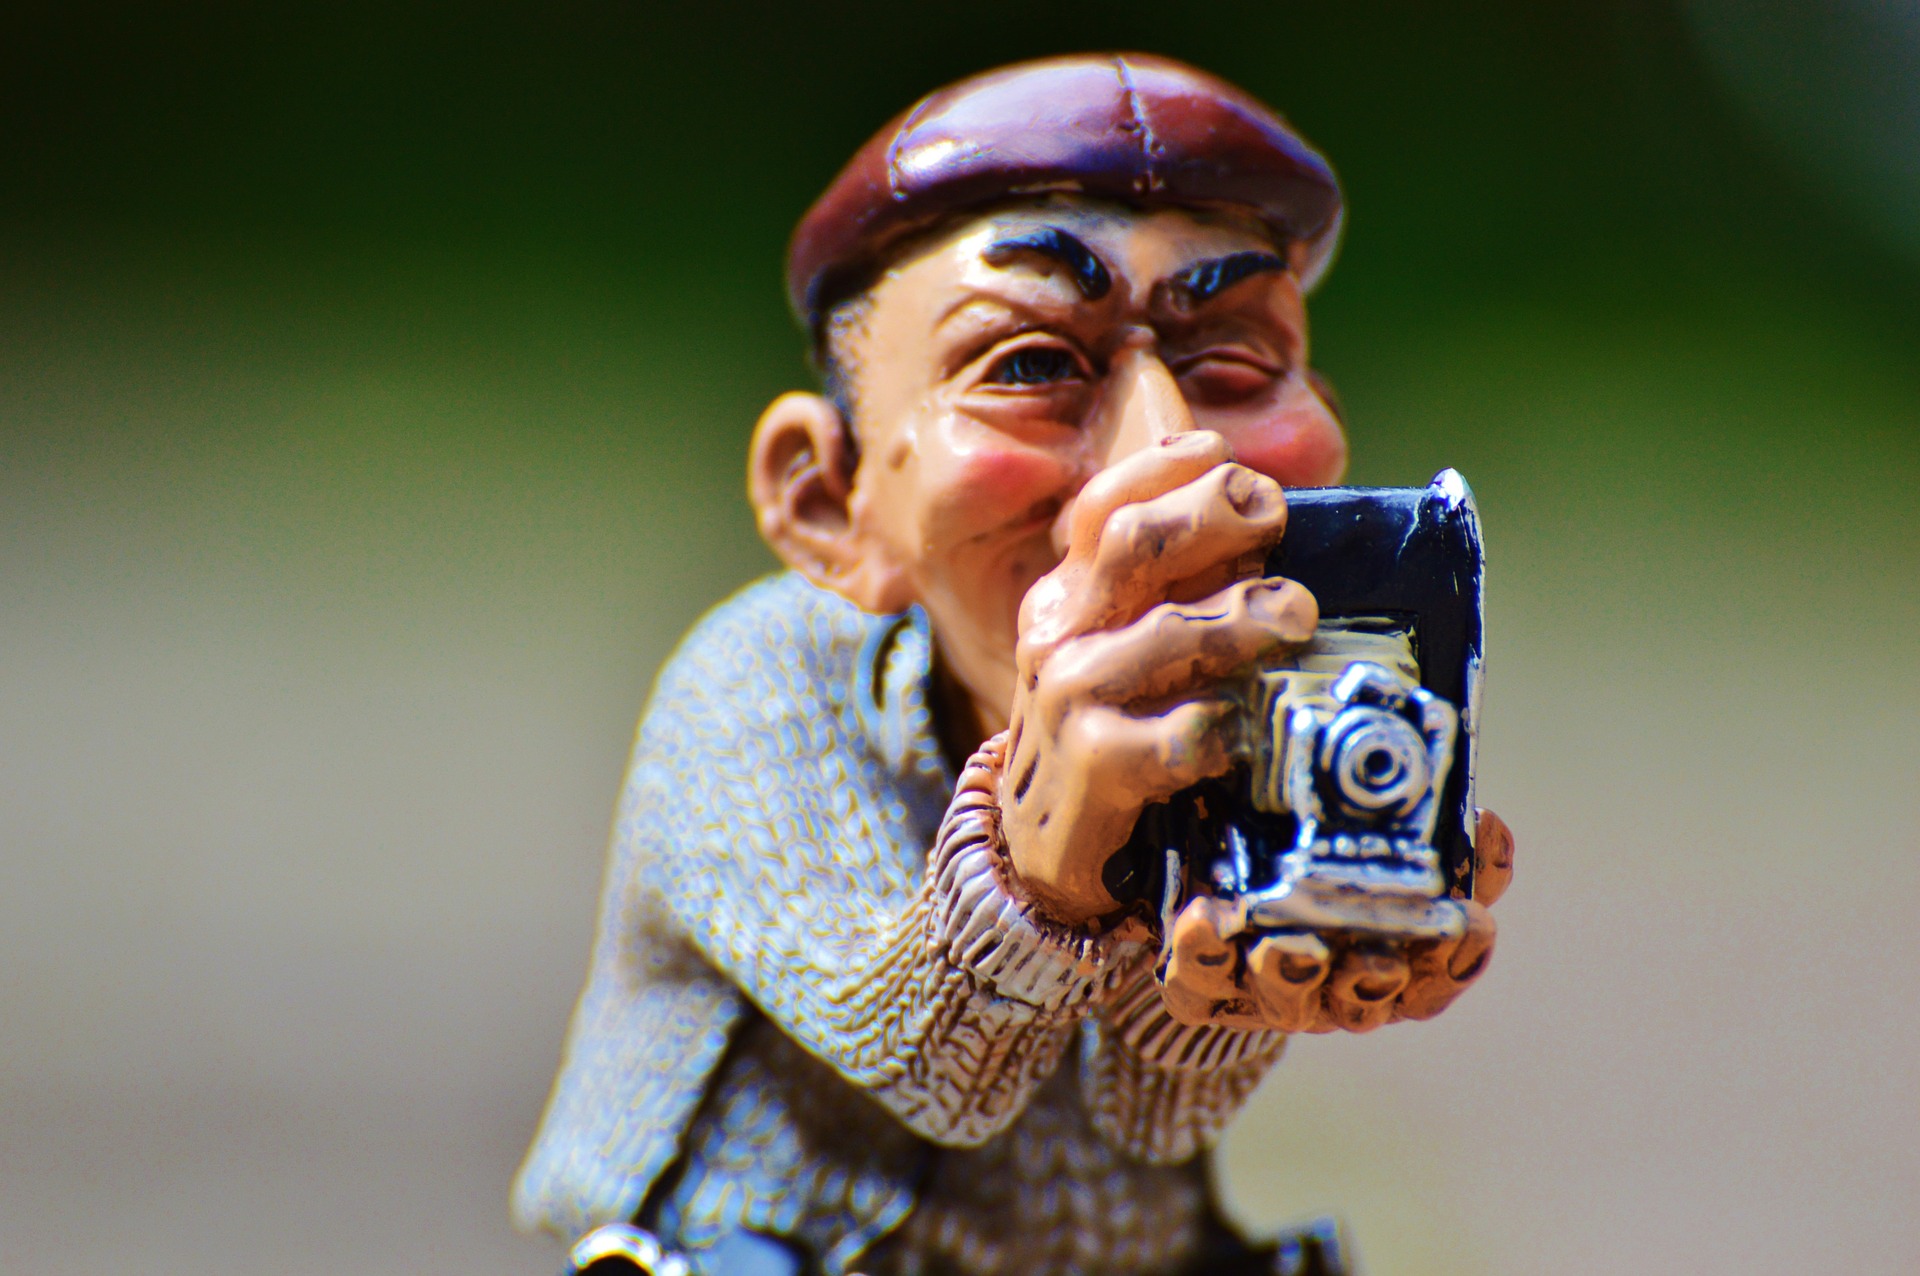 «Уберите камеру!»: в ФТС объяснили запрет на фотосъёмку материалов таможенной проверки